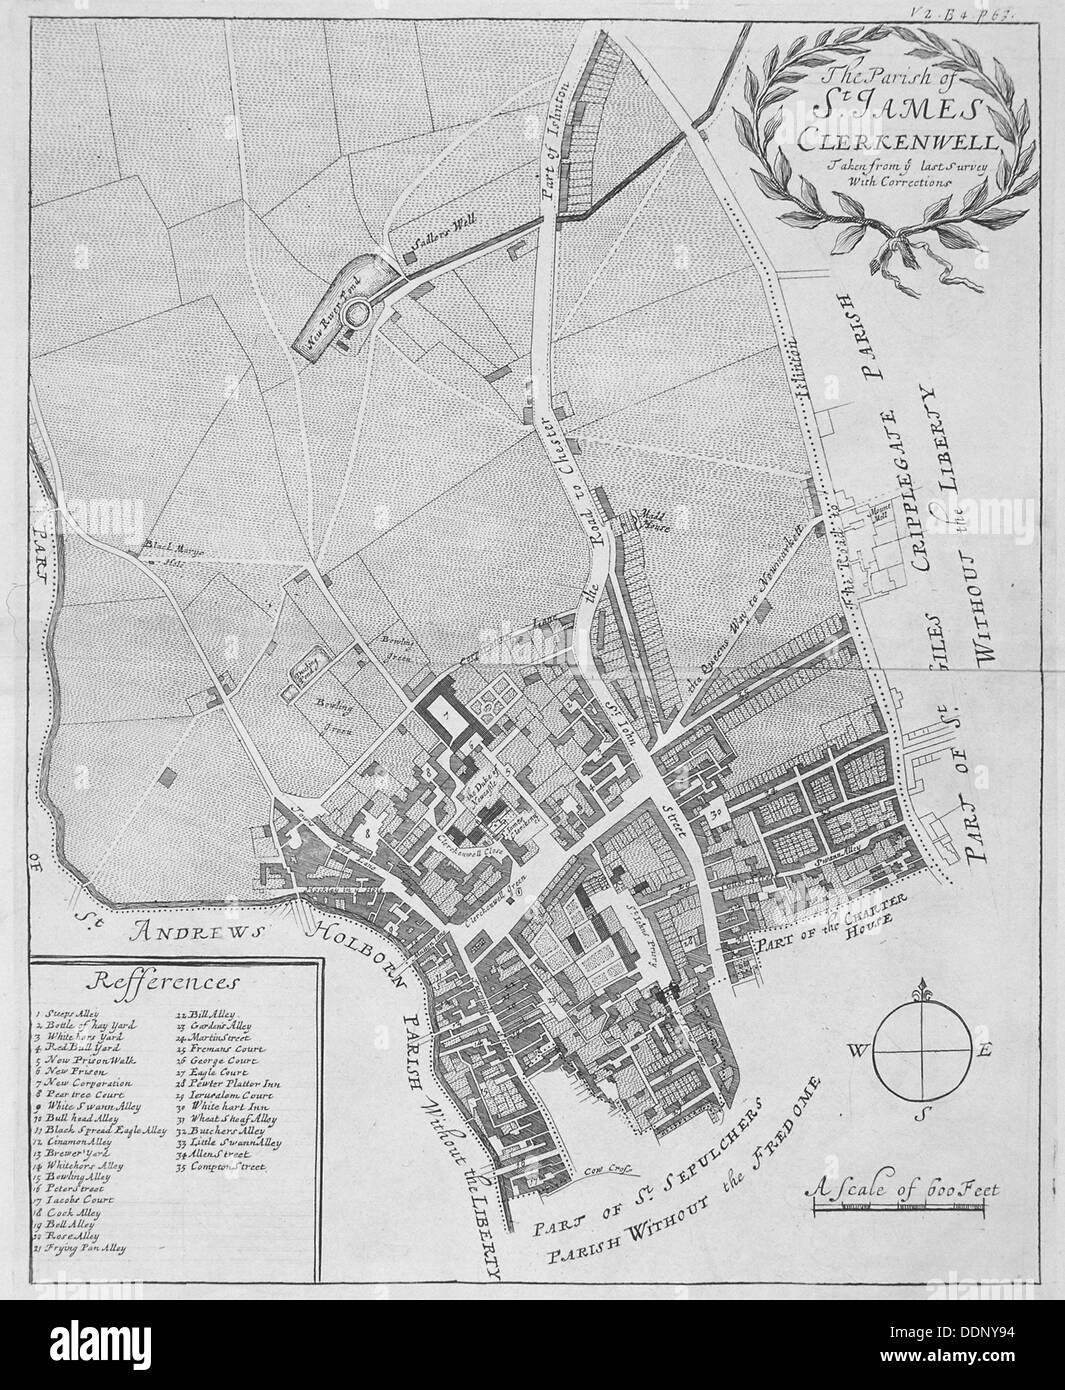 Clerkenwell map Banque d'images noir et blanc - Alamy